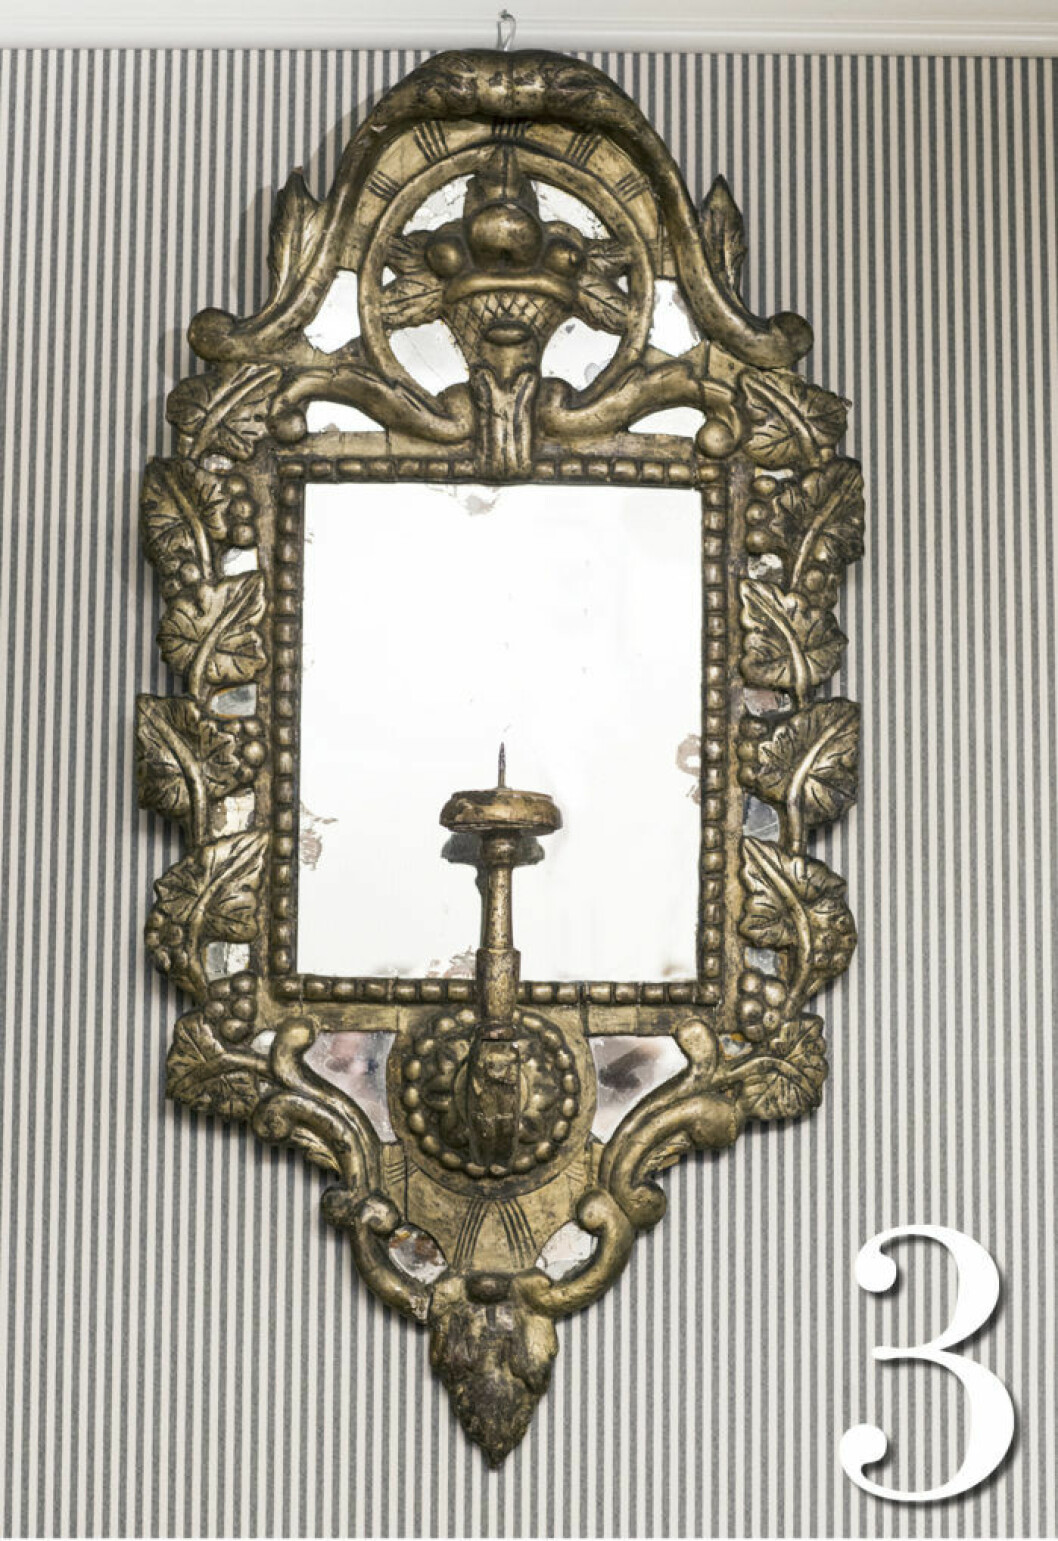 Spegellampett i barockstil med karvsnittat trä, genombrutet krön och kvicksilverfolierat glas. Tillverkad i södra Europa under 1700-talet. 